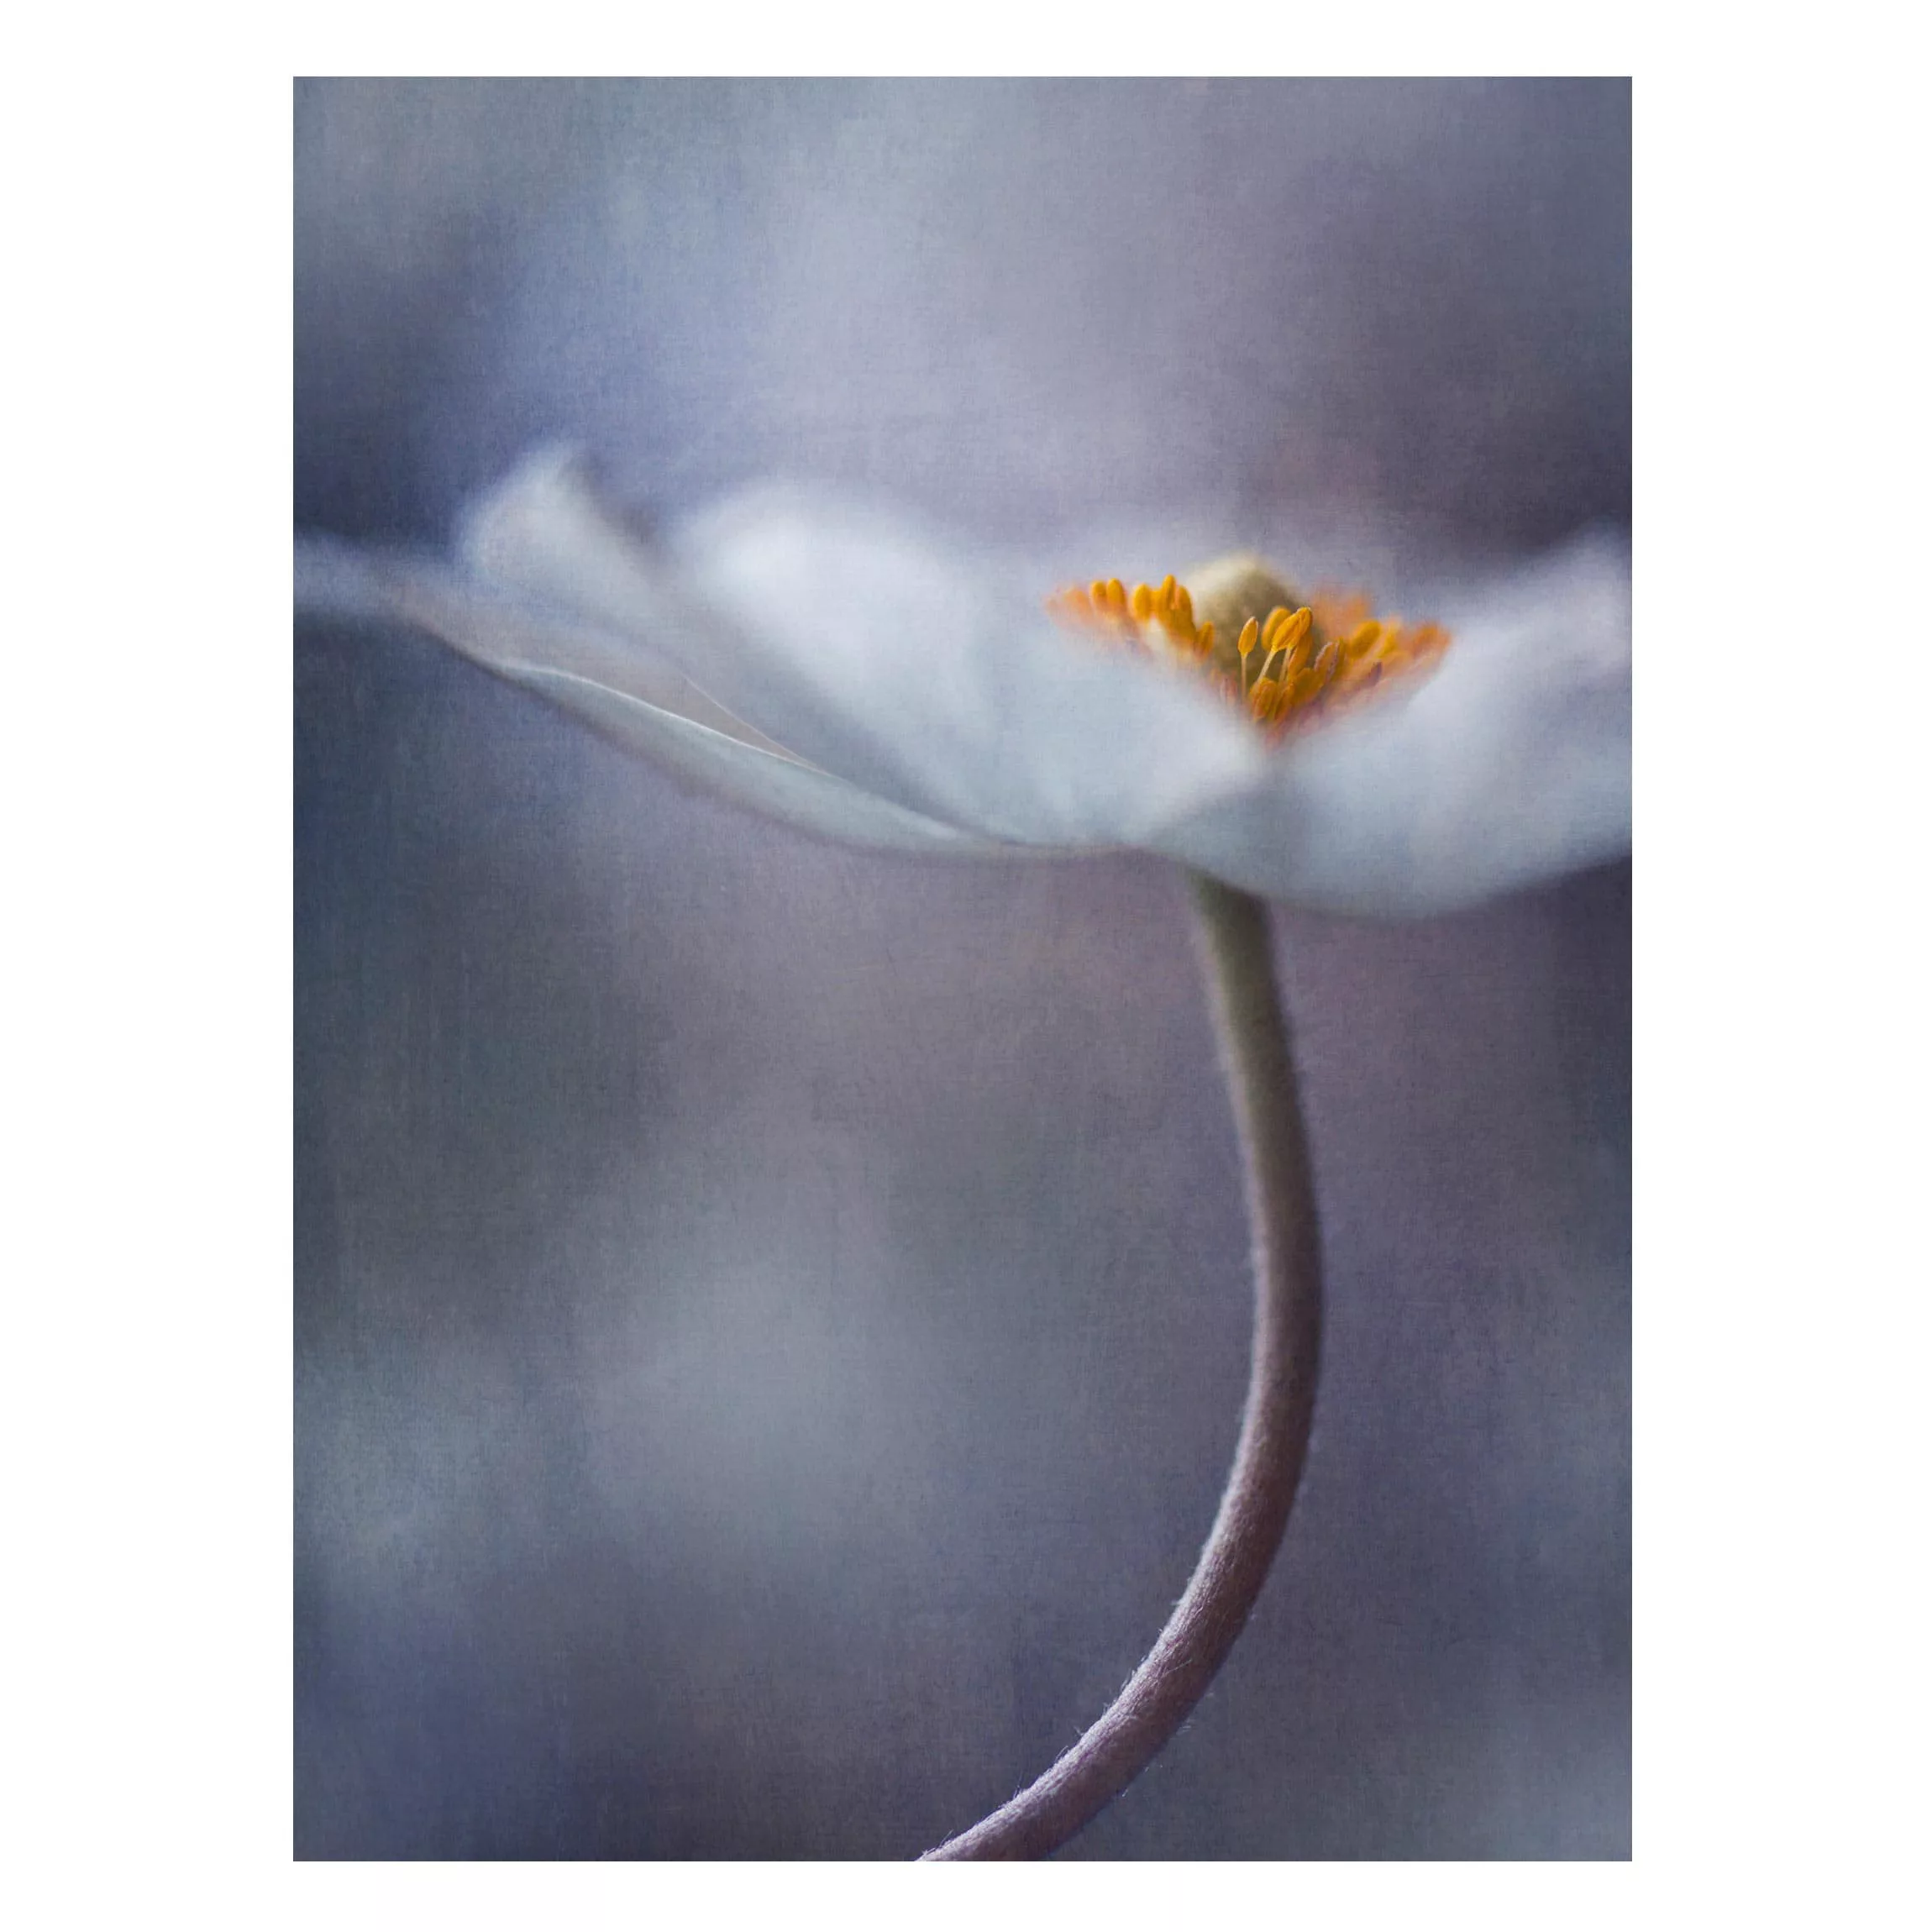 Magnettafel Blumen - Hochformat 3:4 Weiße Anemonenblüte günstig online kaufen